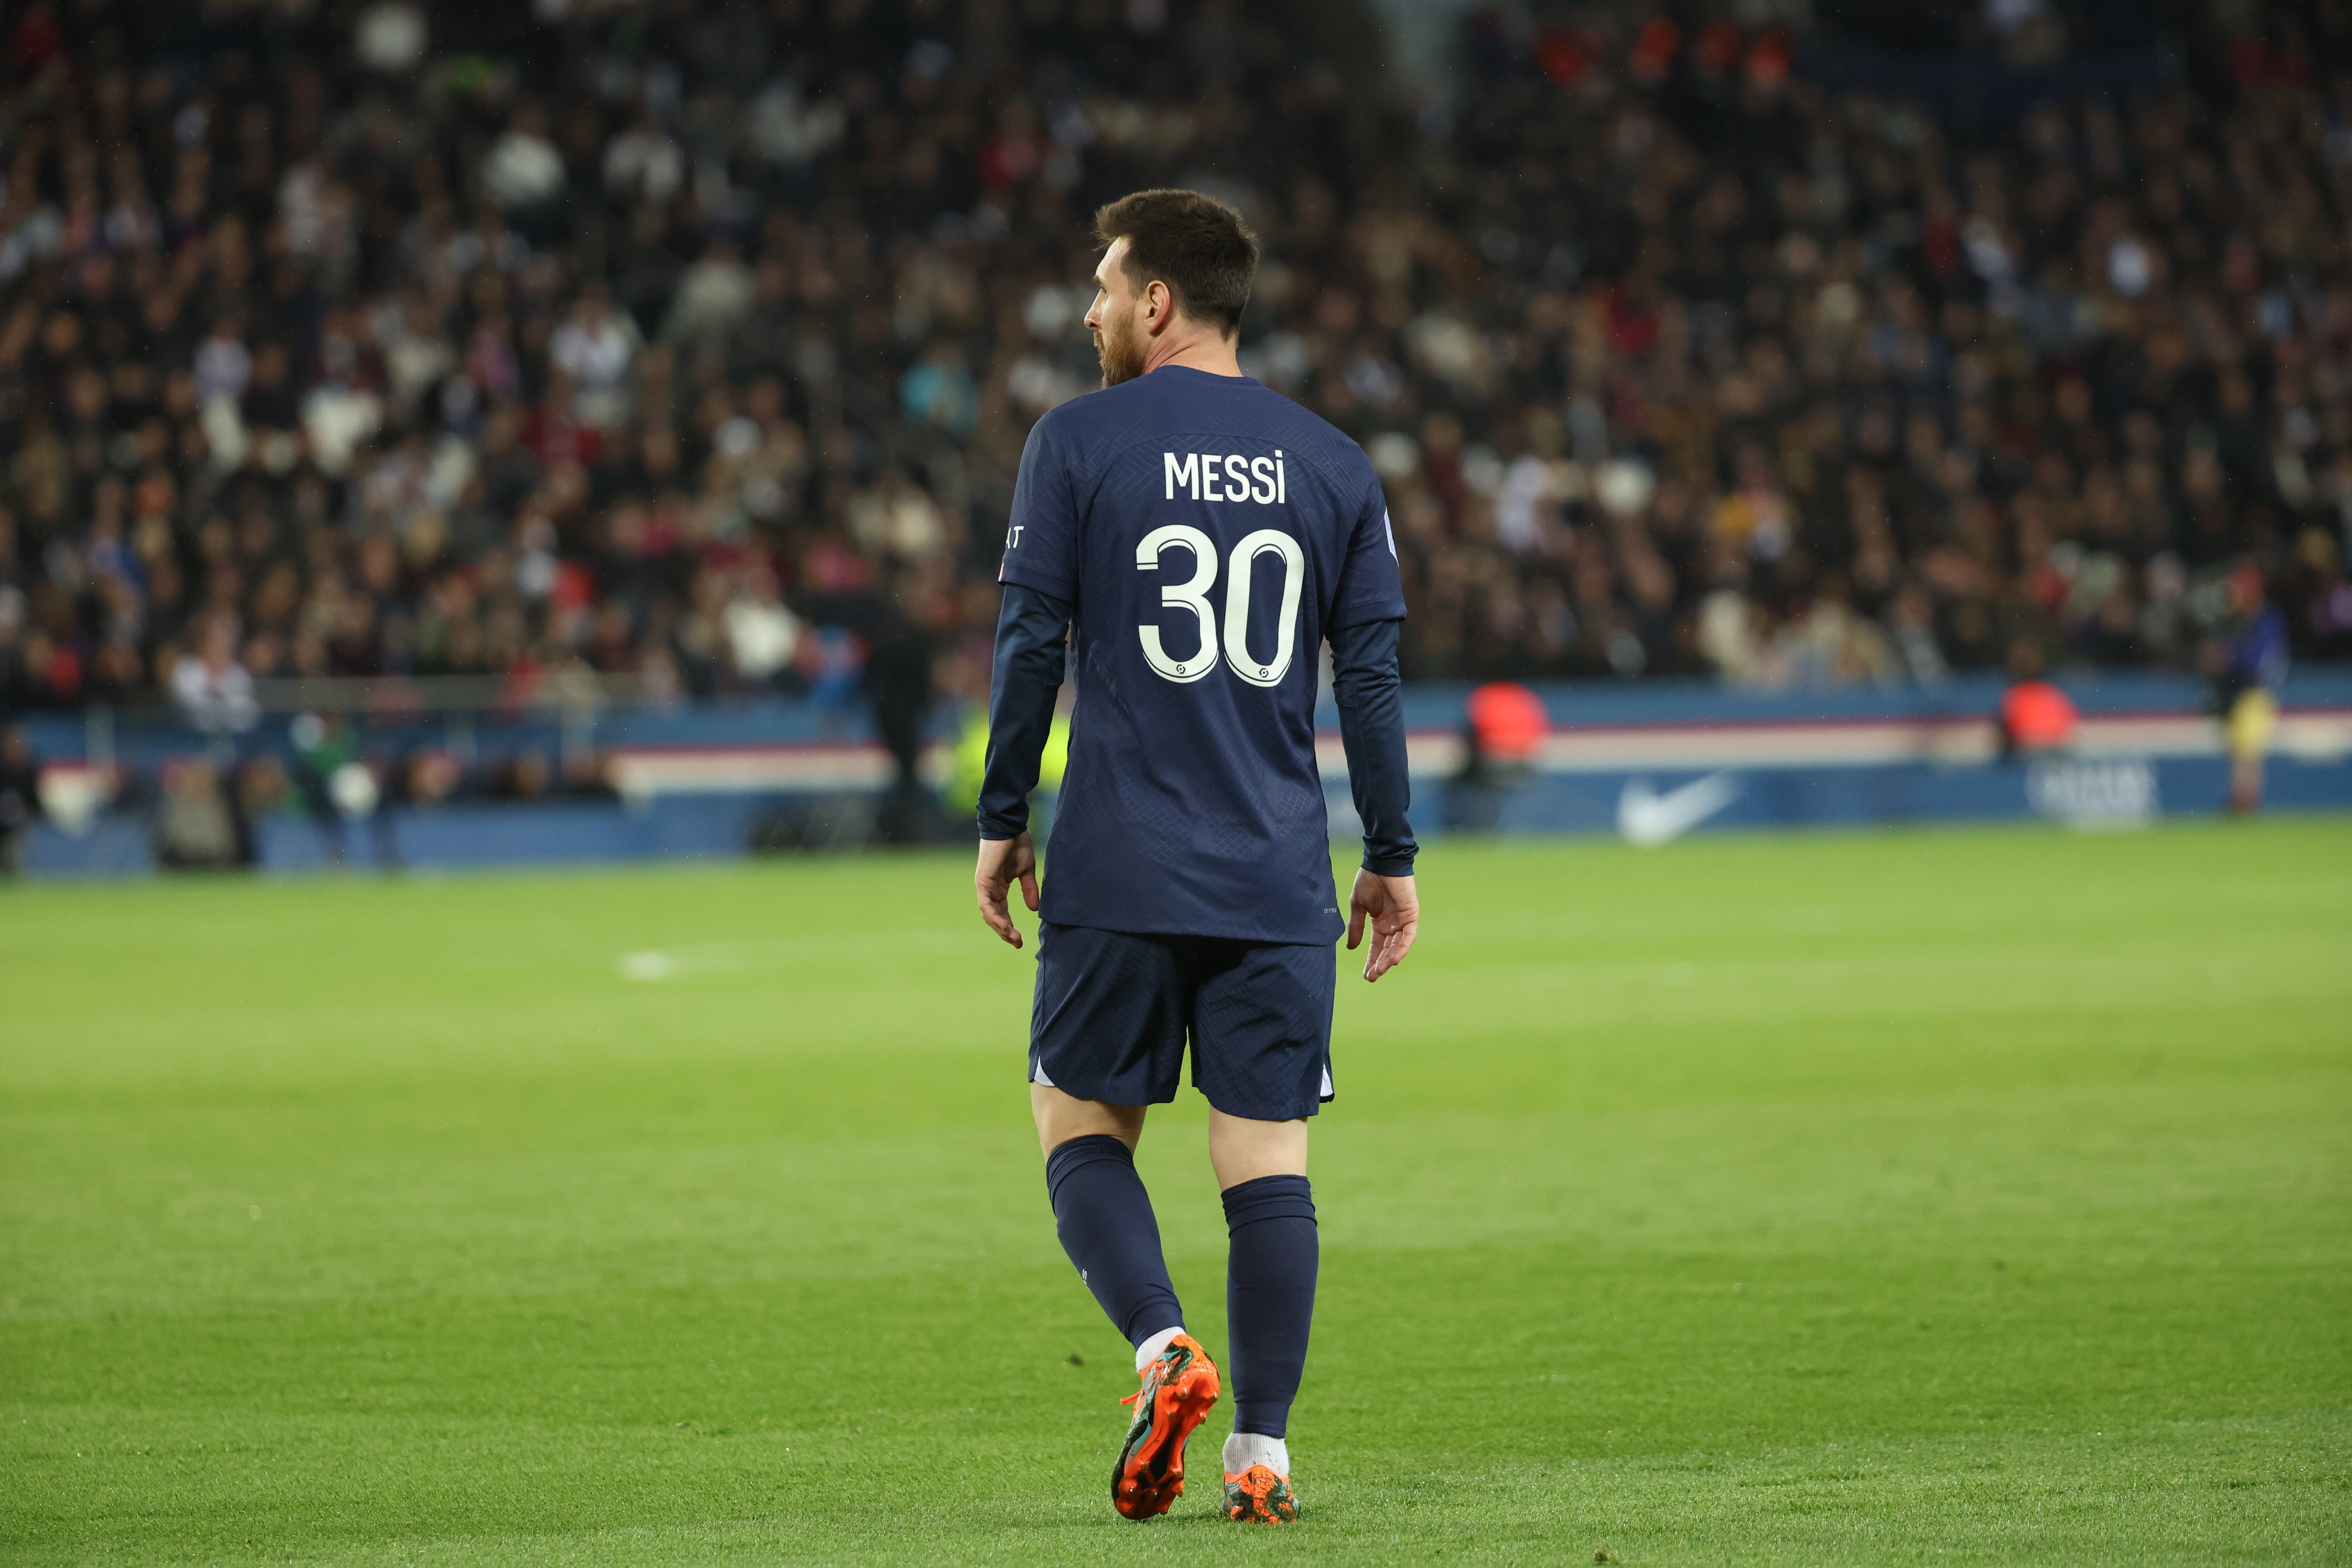 Messi manquera les deux prochaines rencontres du Paris Saint-Germain. LP/Arnaud Journois